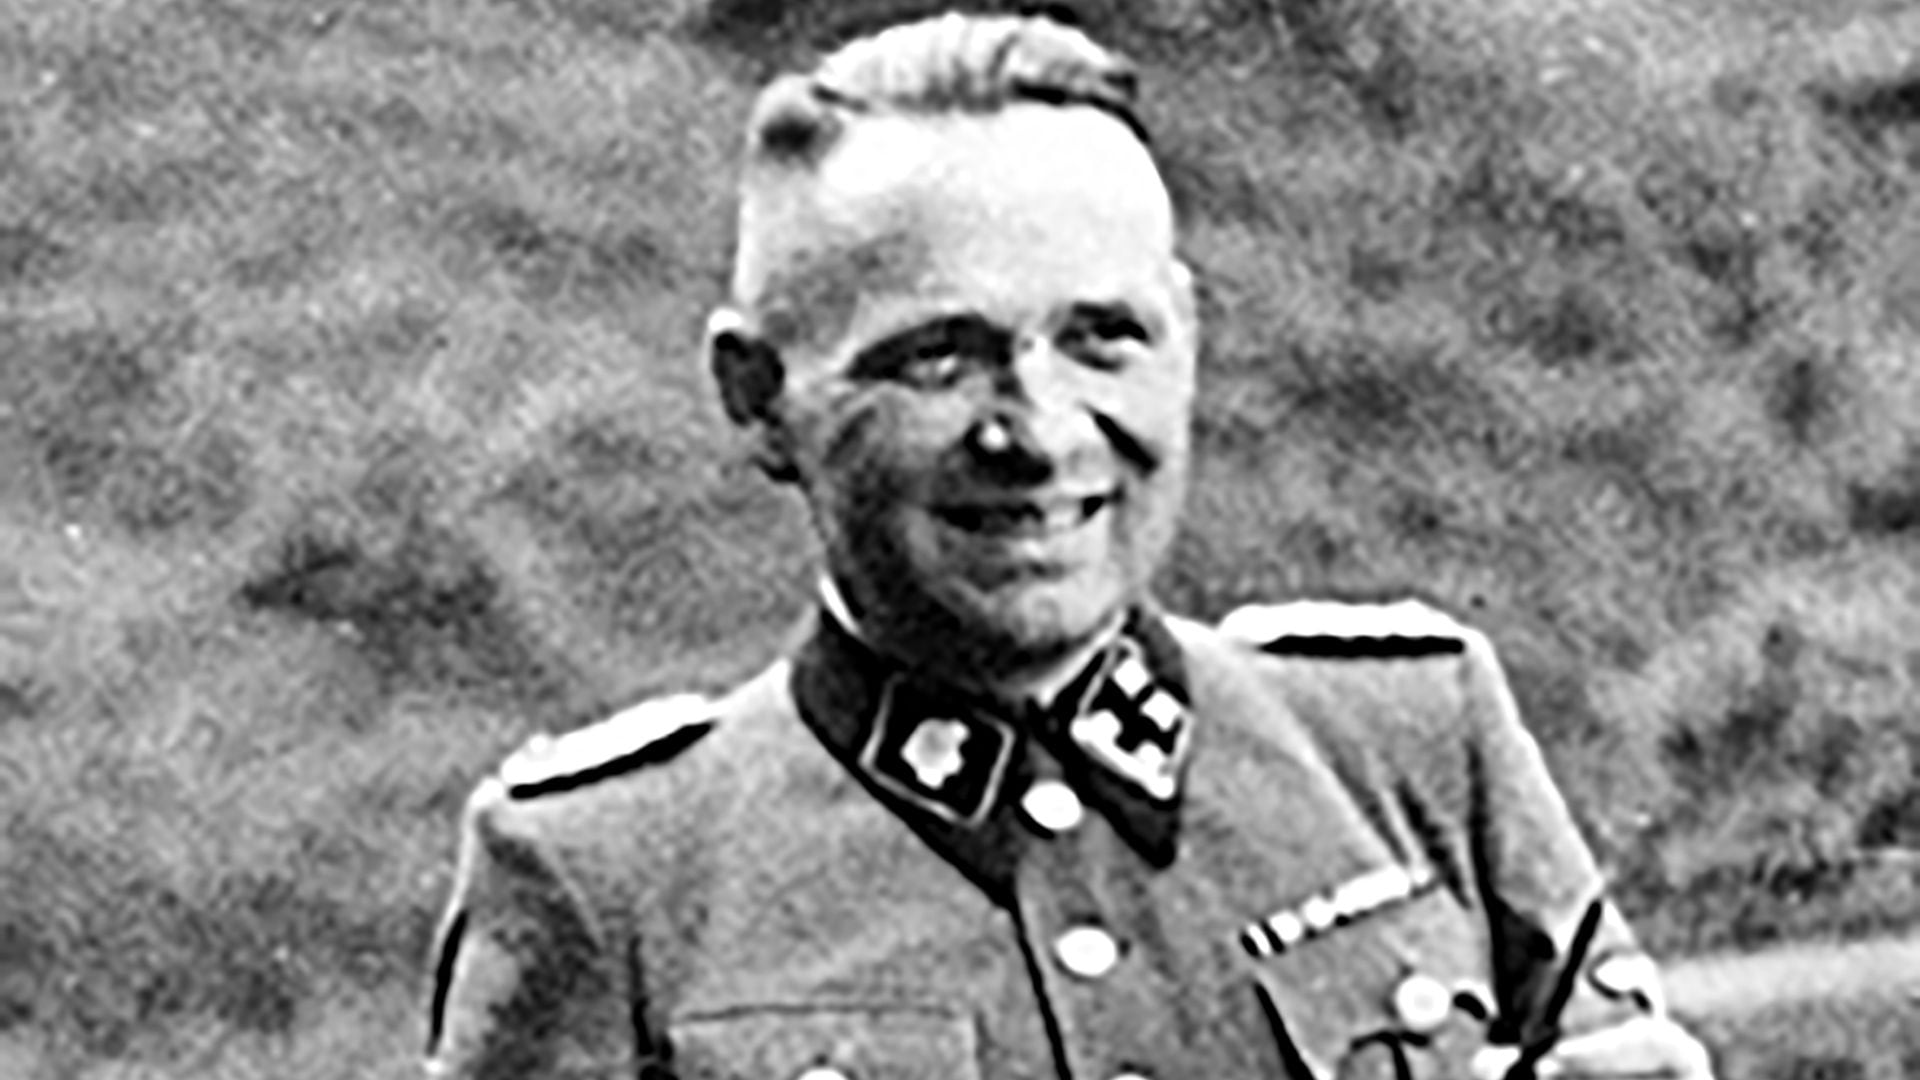 Rudolf Höss, más que un seguidor de Adolf Hitler, fue un arquitecto de la muerte en el régimen nazi.